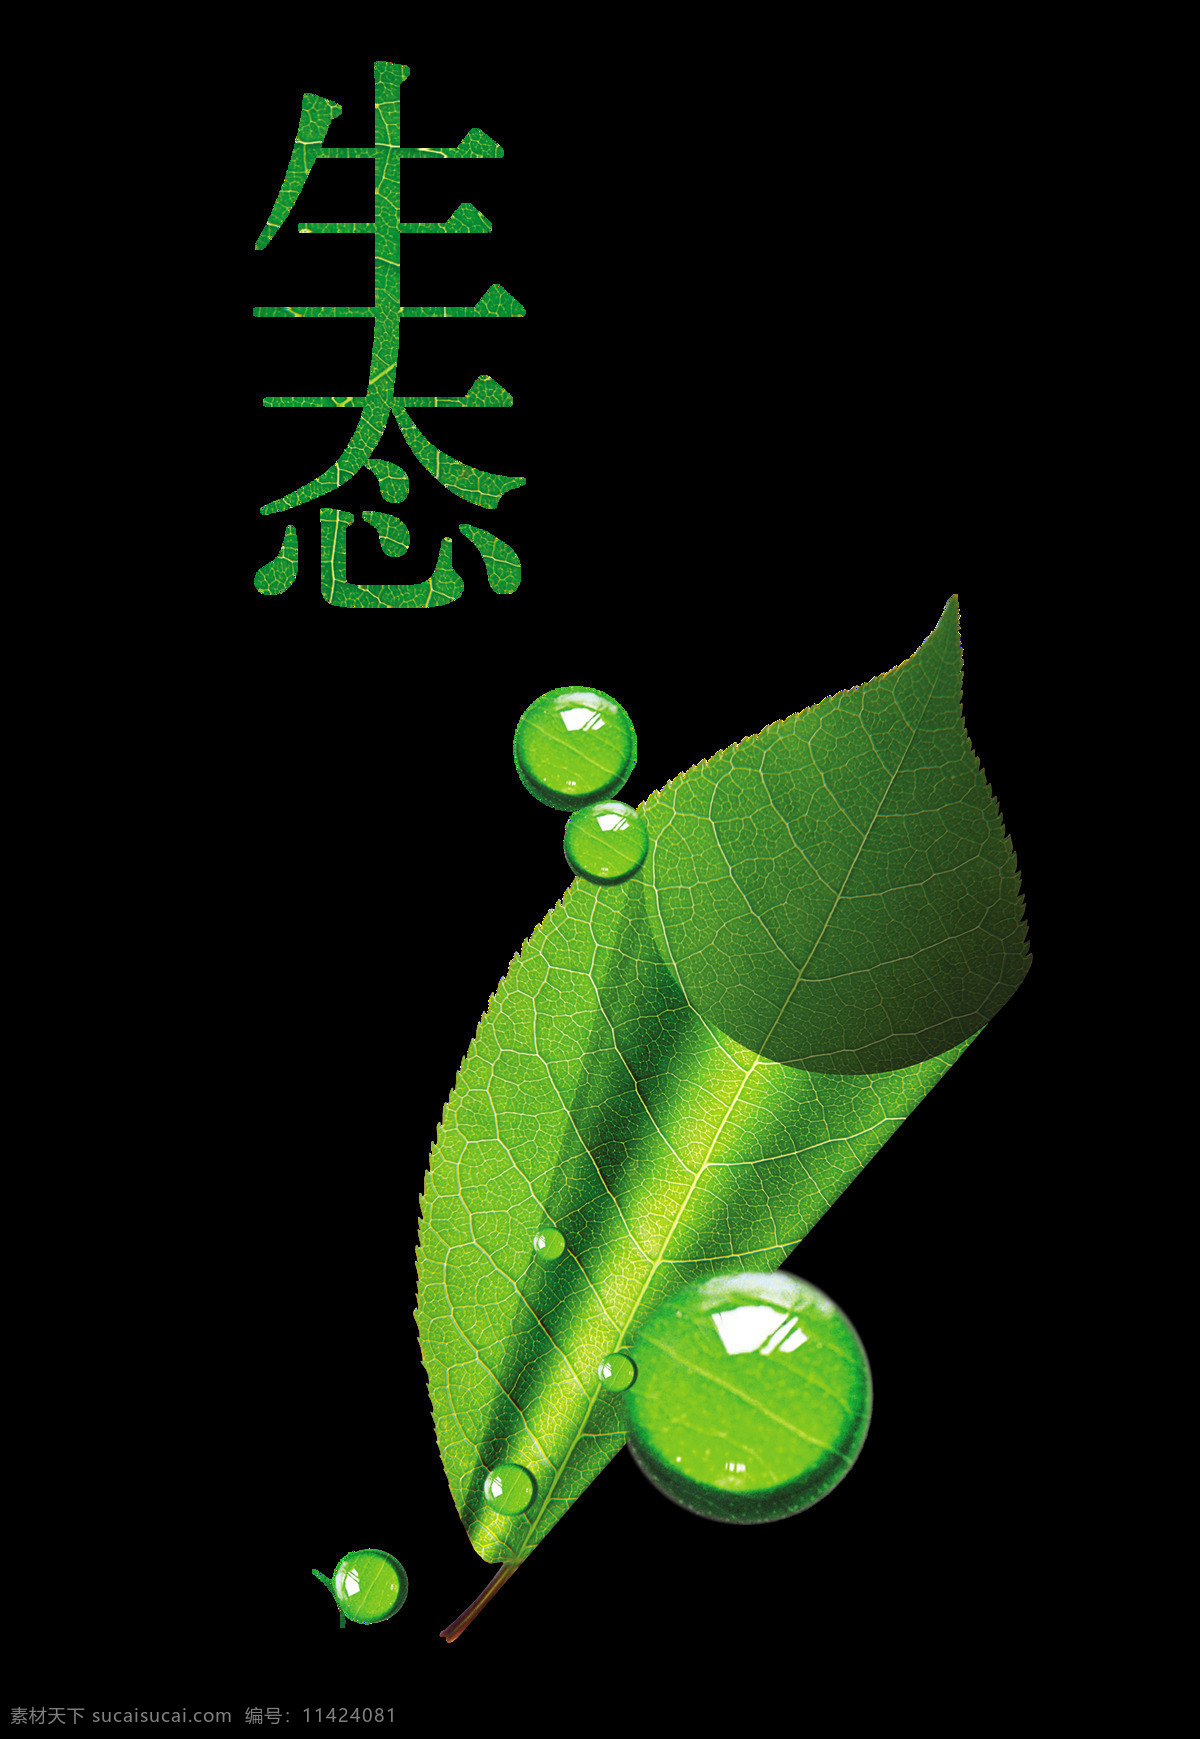 生态 绿色环保 艺术 字 树叶 水滴 广告 促销 生态绿色环保 艺术字 海报 宣传 元素